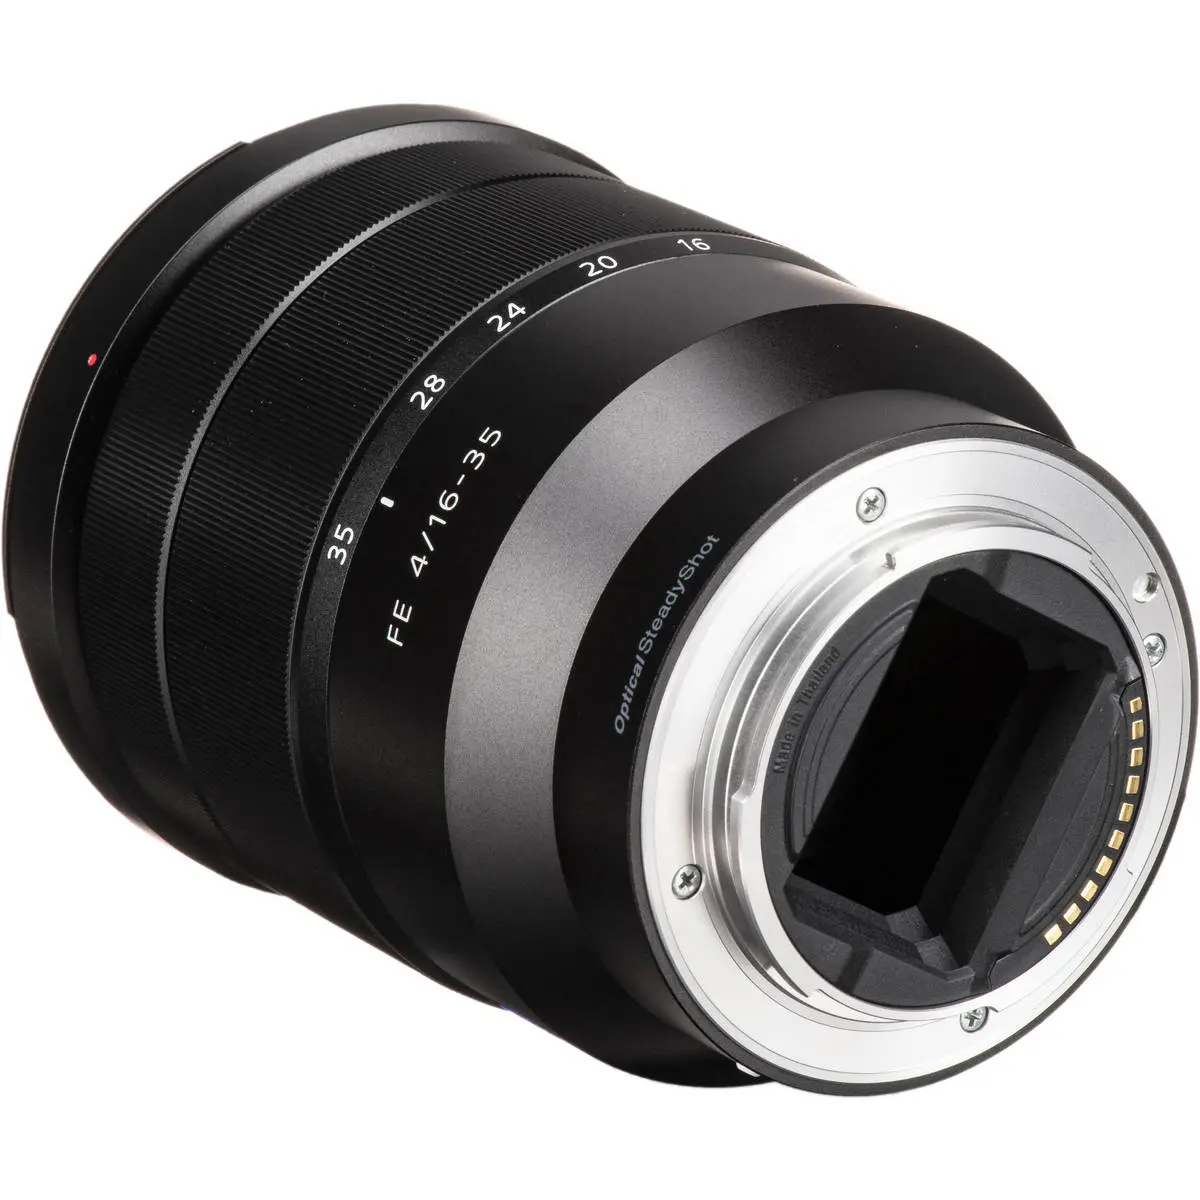 5. Sony FE 16-35mm F4 ZA OSS SEL1635Z F4.0 E-Mount Full Frame Lens